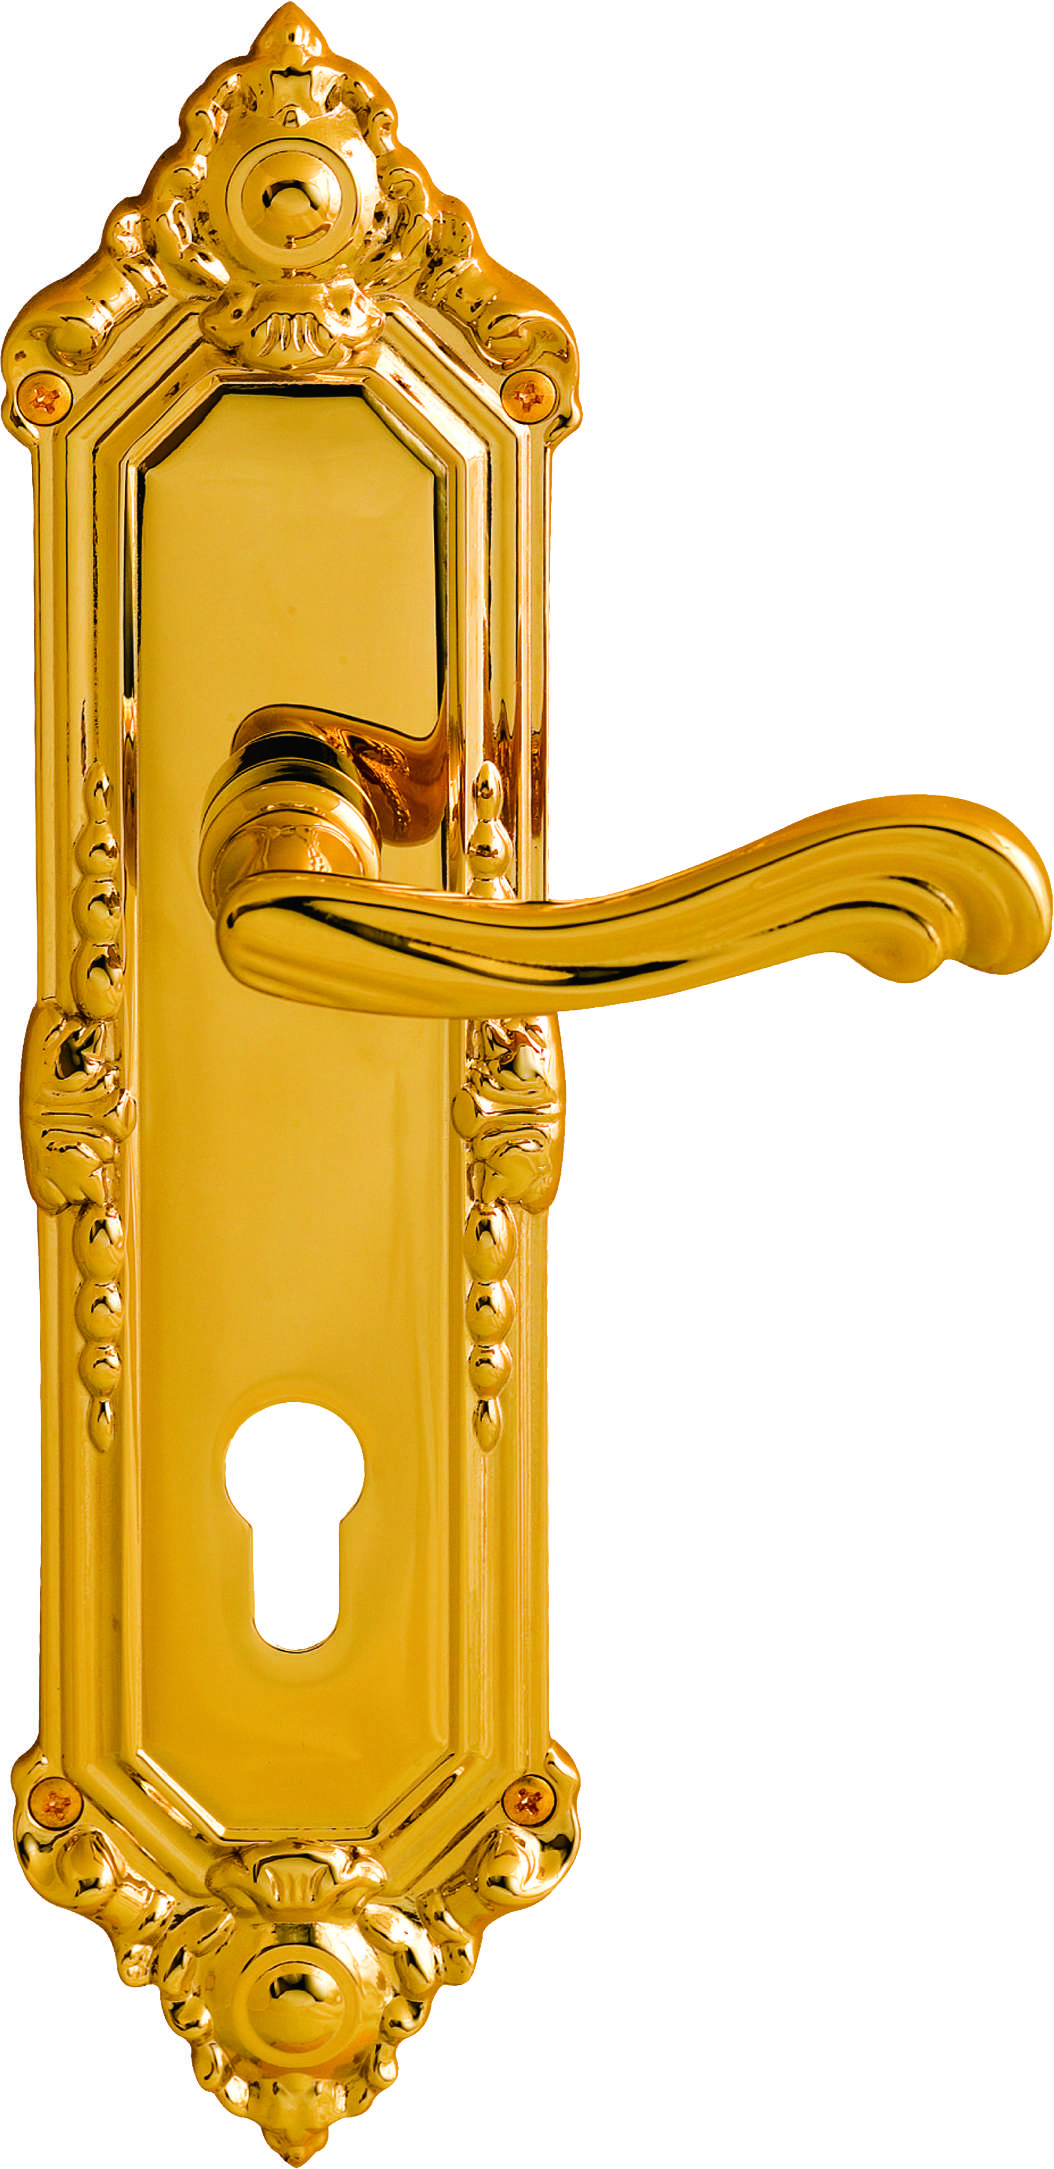 Door Hardware On Sale Brass Door Handle Accessories From China